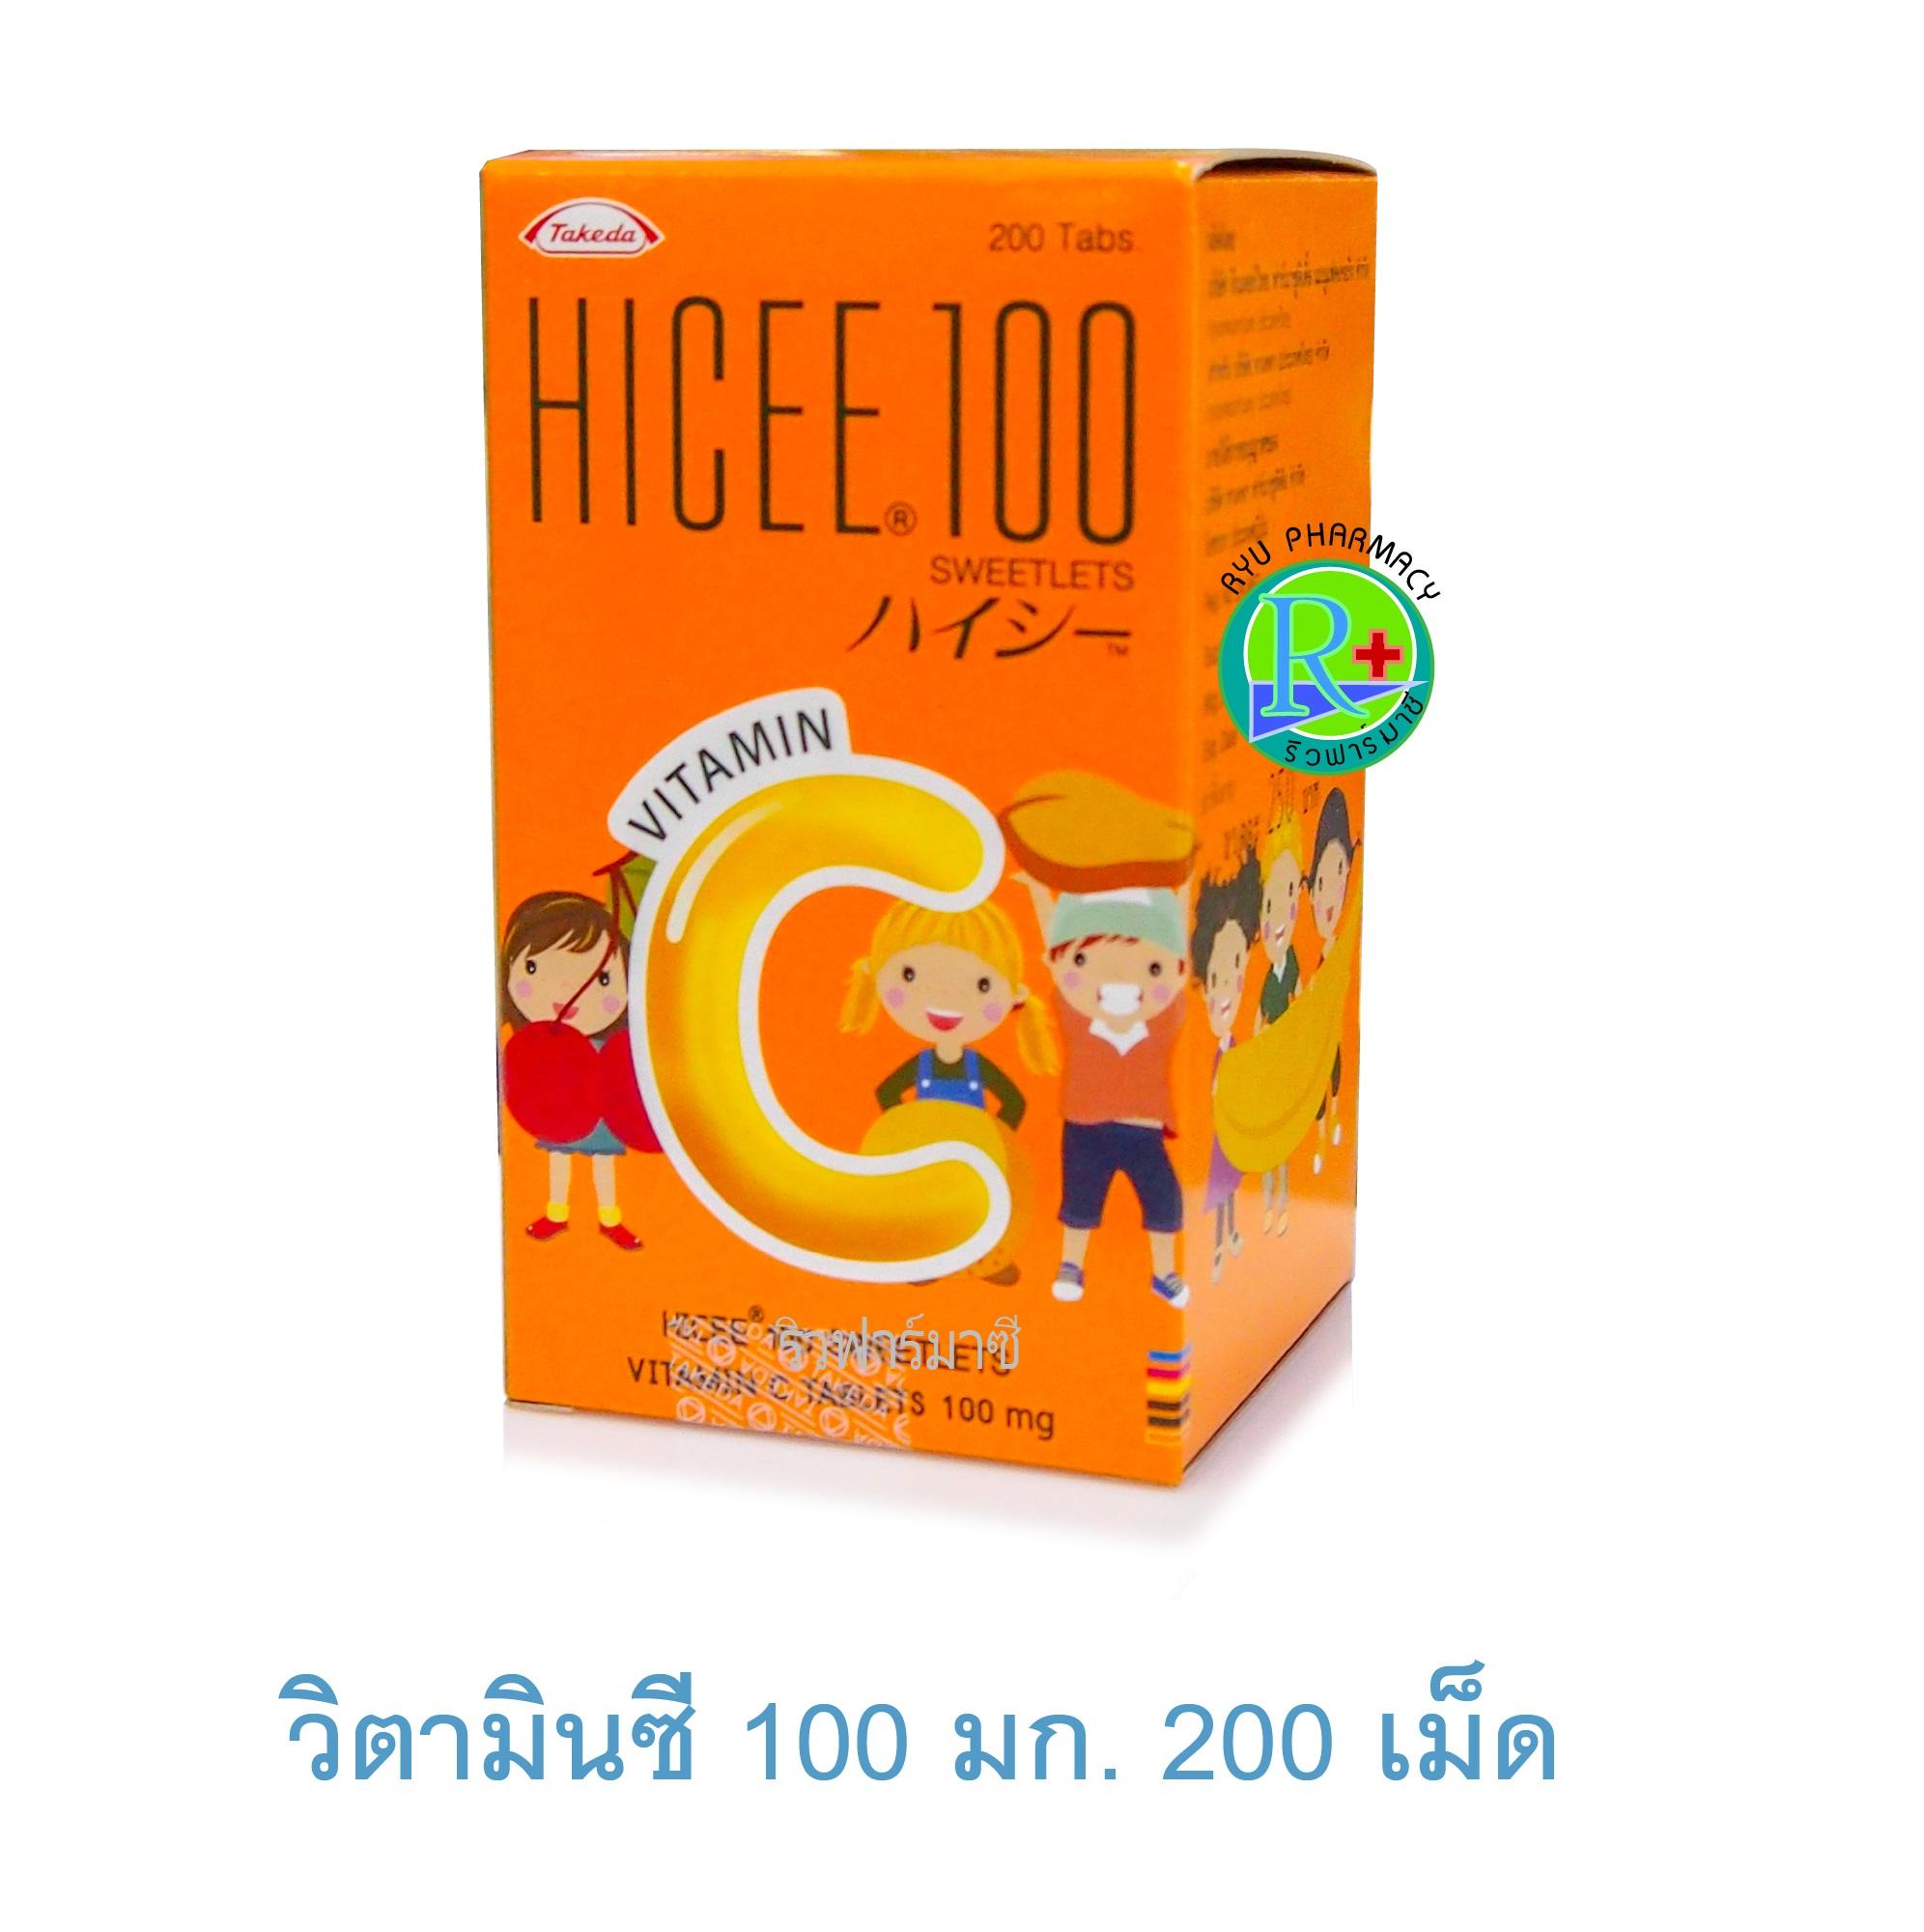 Hicee 100 Sweetlets วิตามินซี 100 mg ไฮซี สวีทเลทส์ บรรจุ 200 เม็ด เสริมภูมิคุ้มกันสำหรับเด็ก